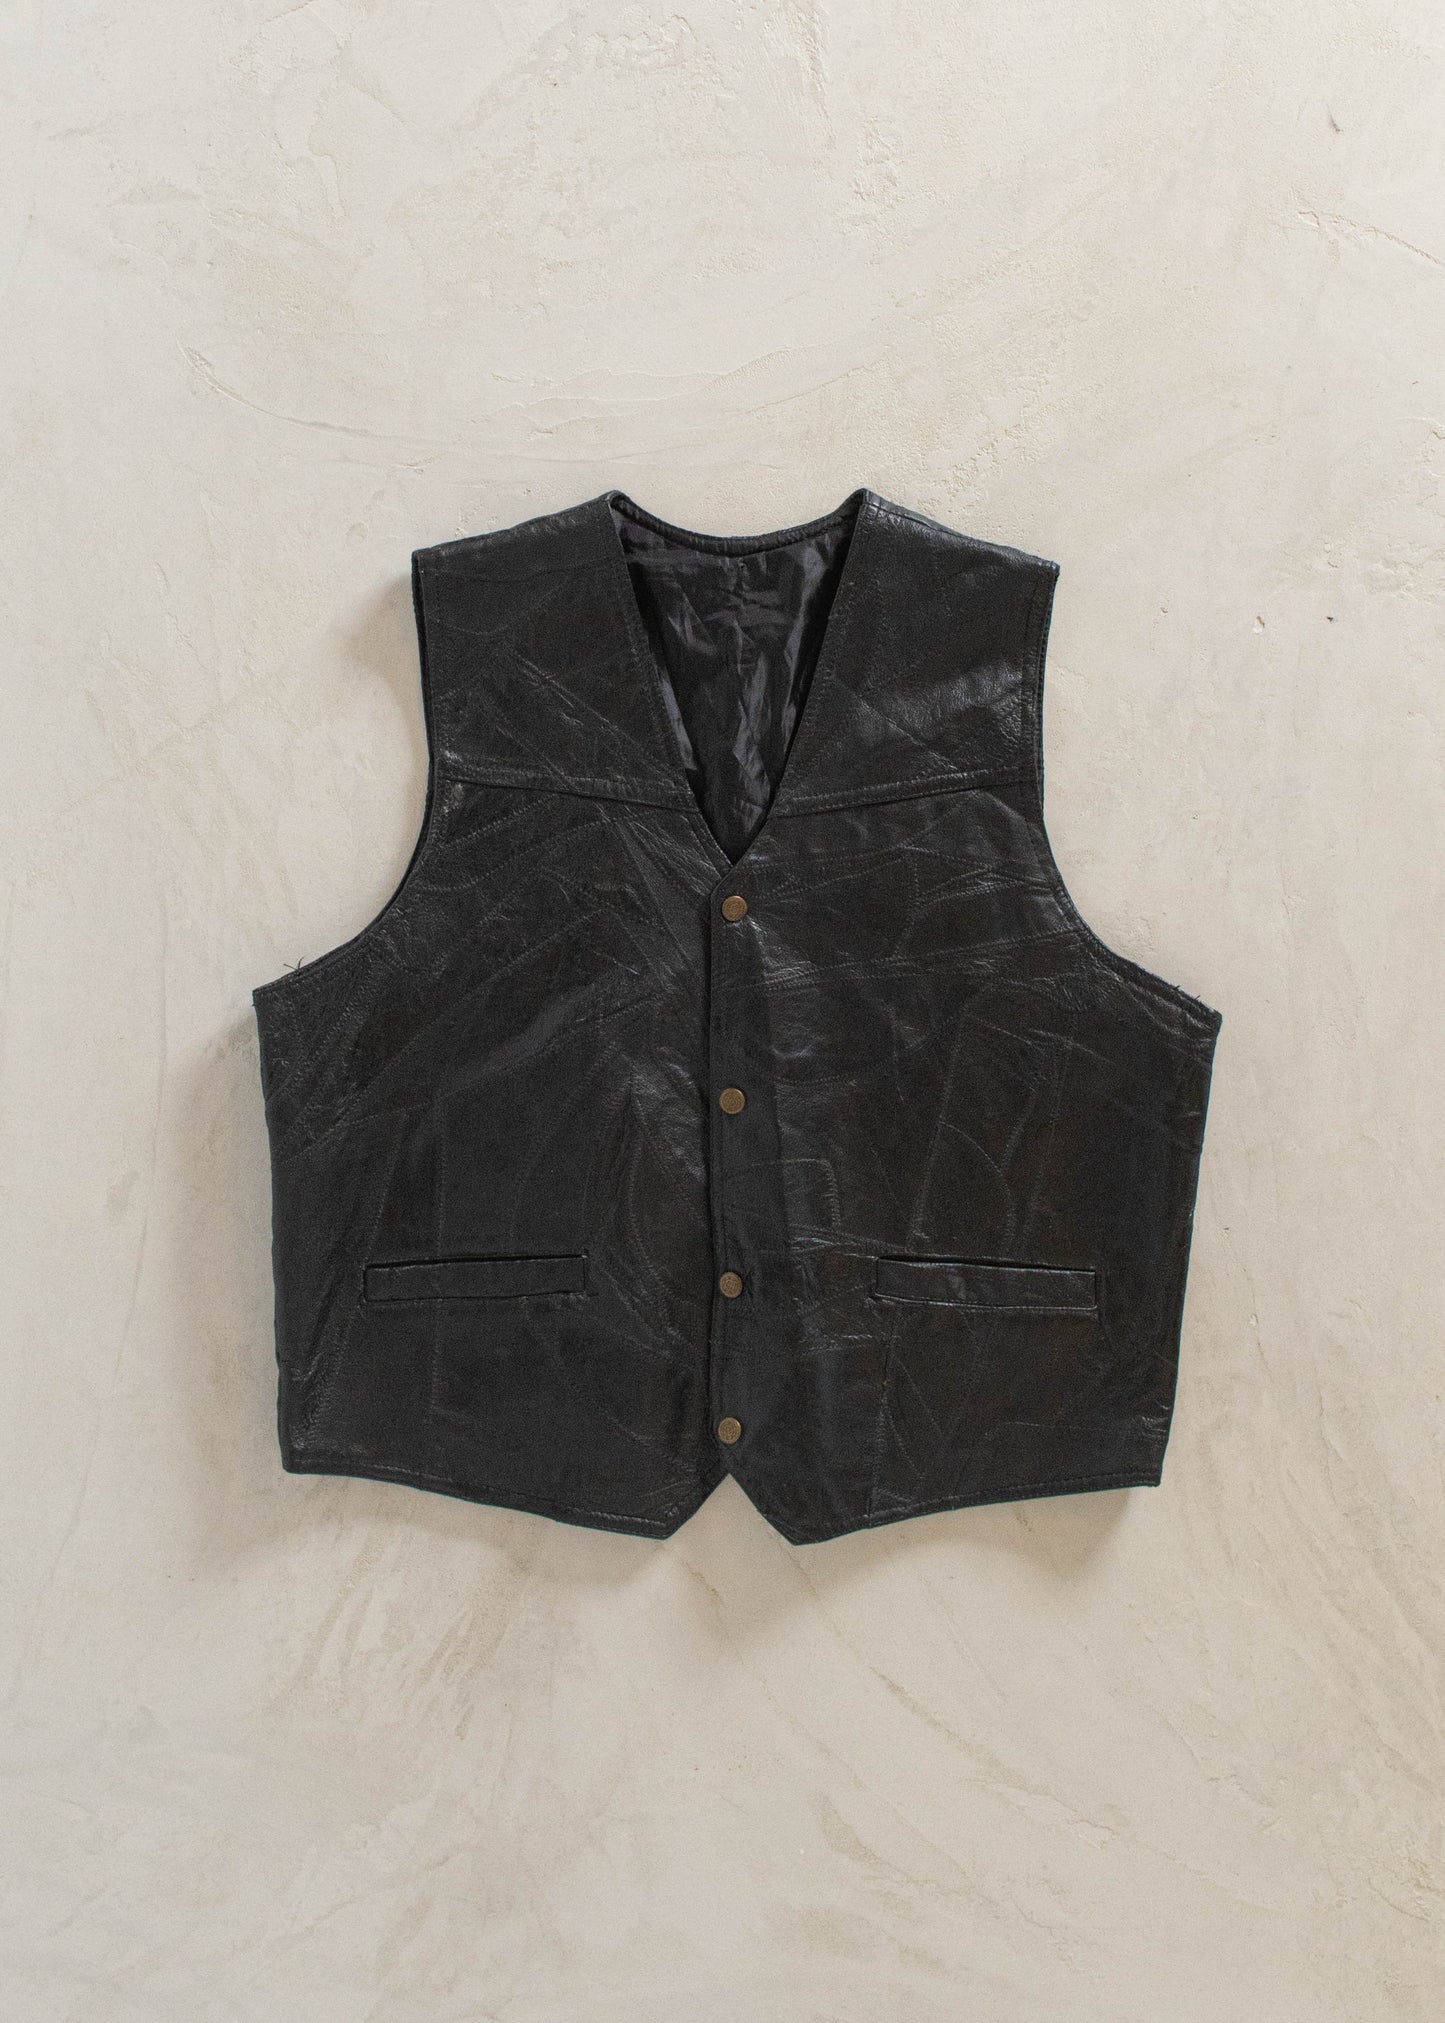 Vintage 1980s Leather Vest Size M/L